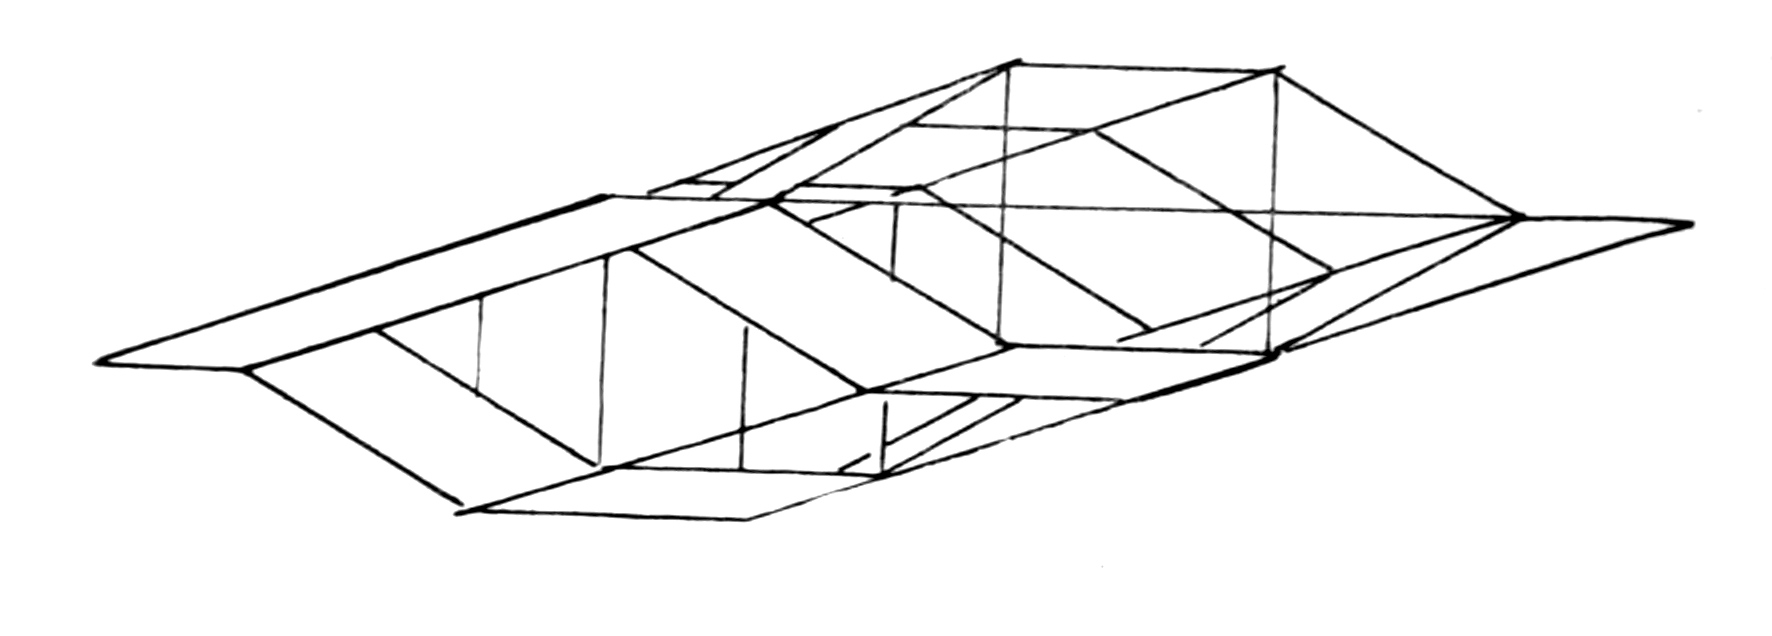 kite variation